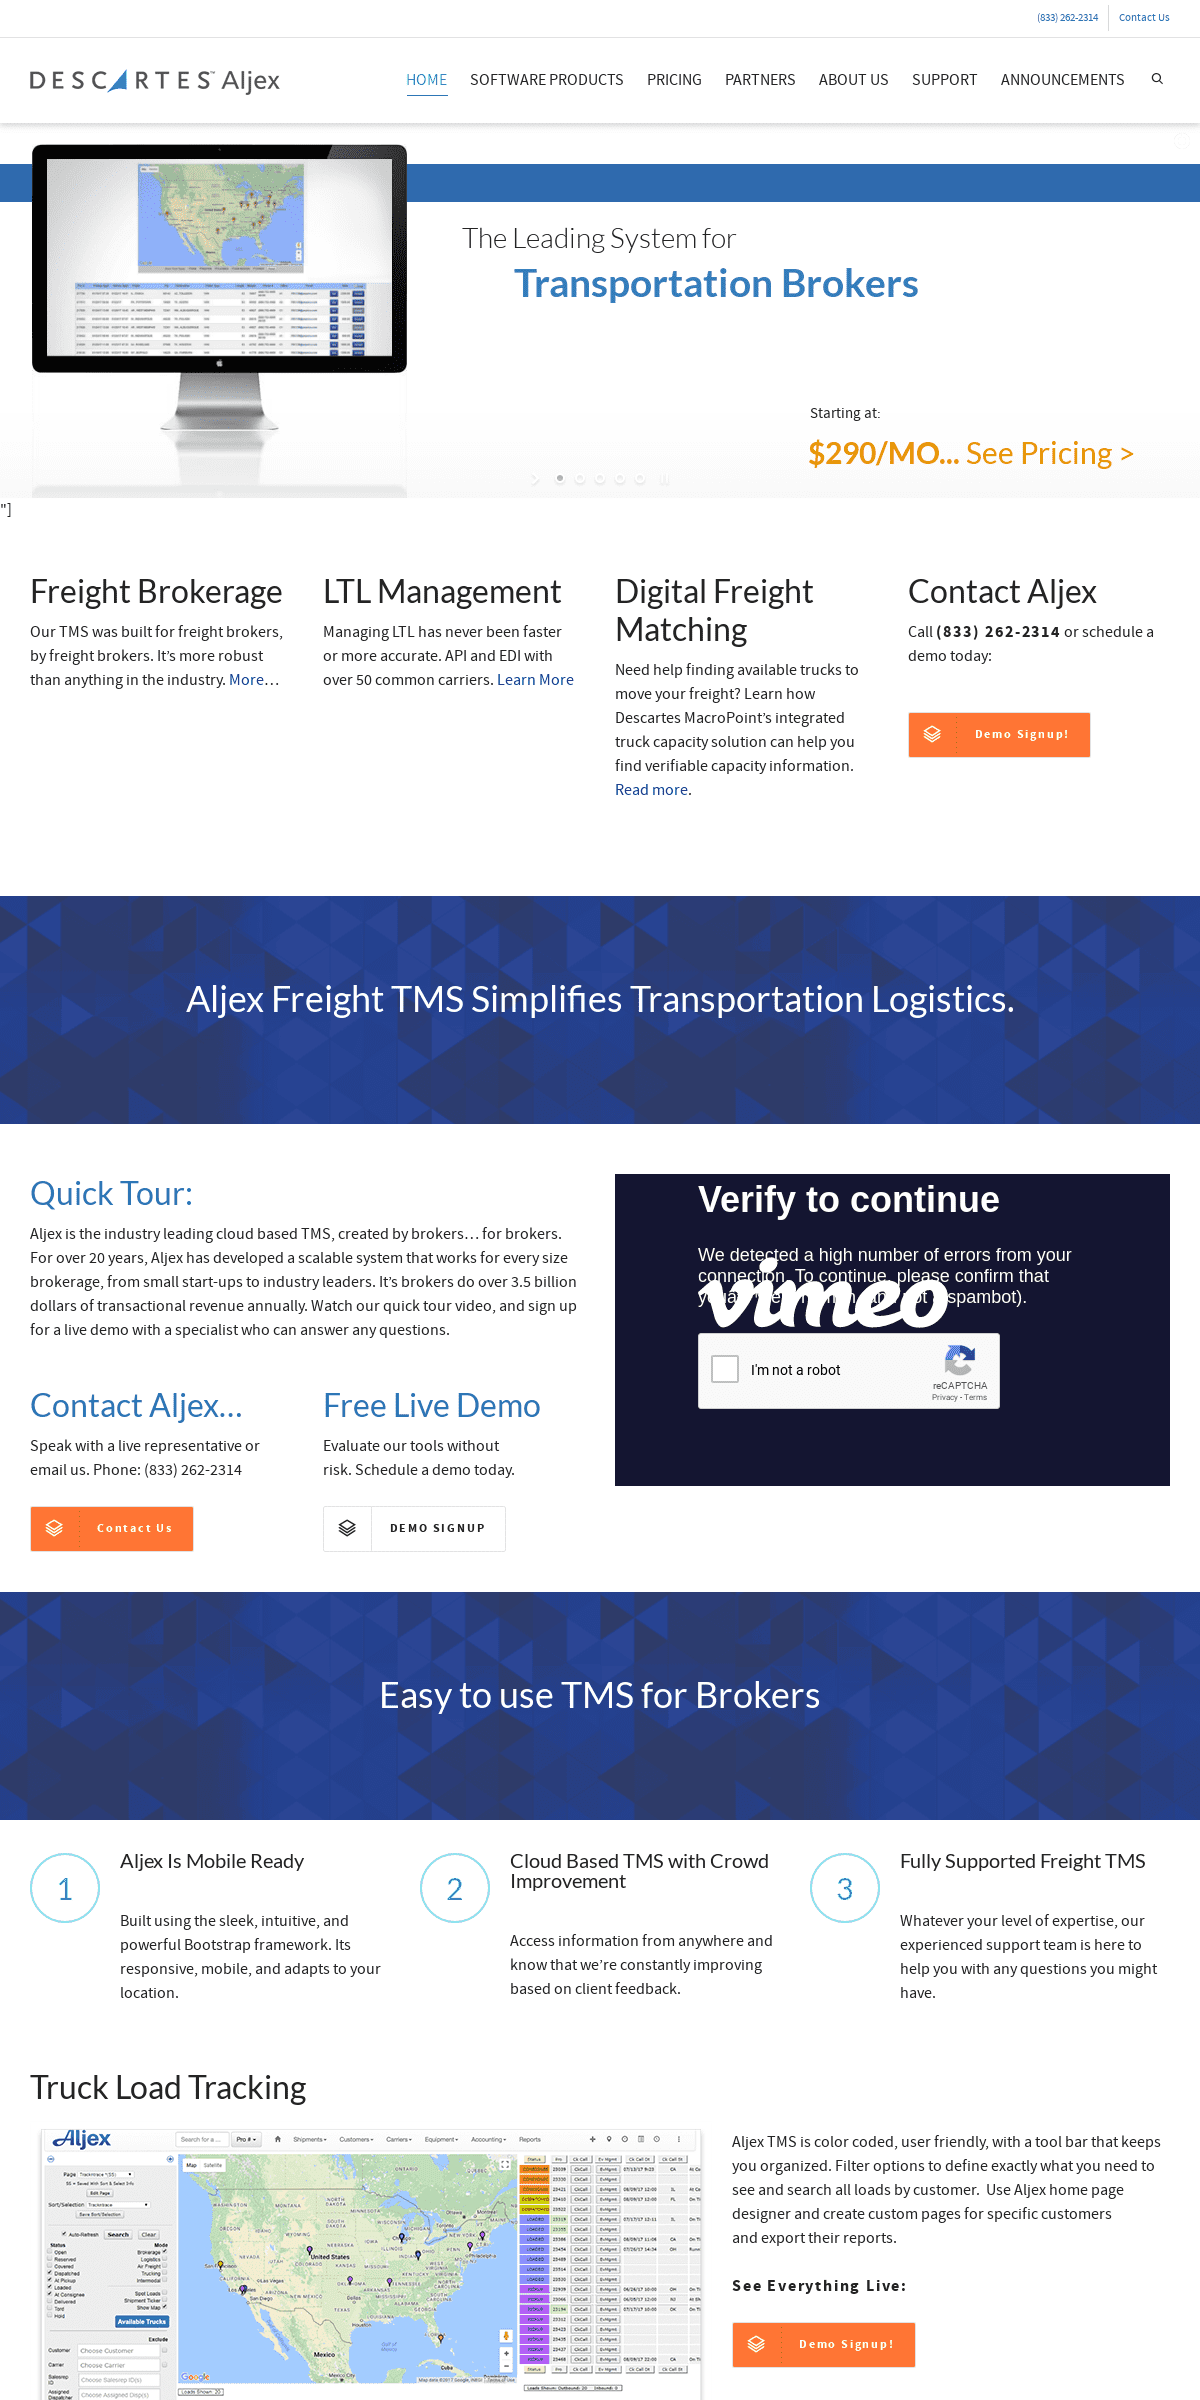 A complete backup of aljex.com